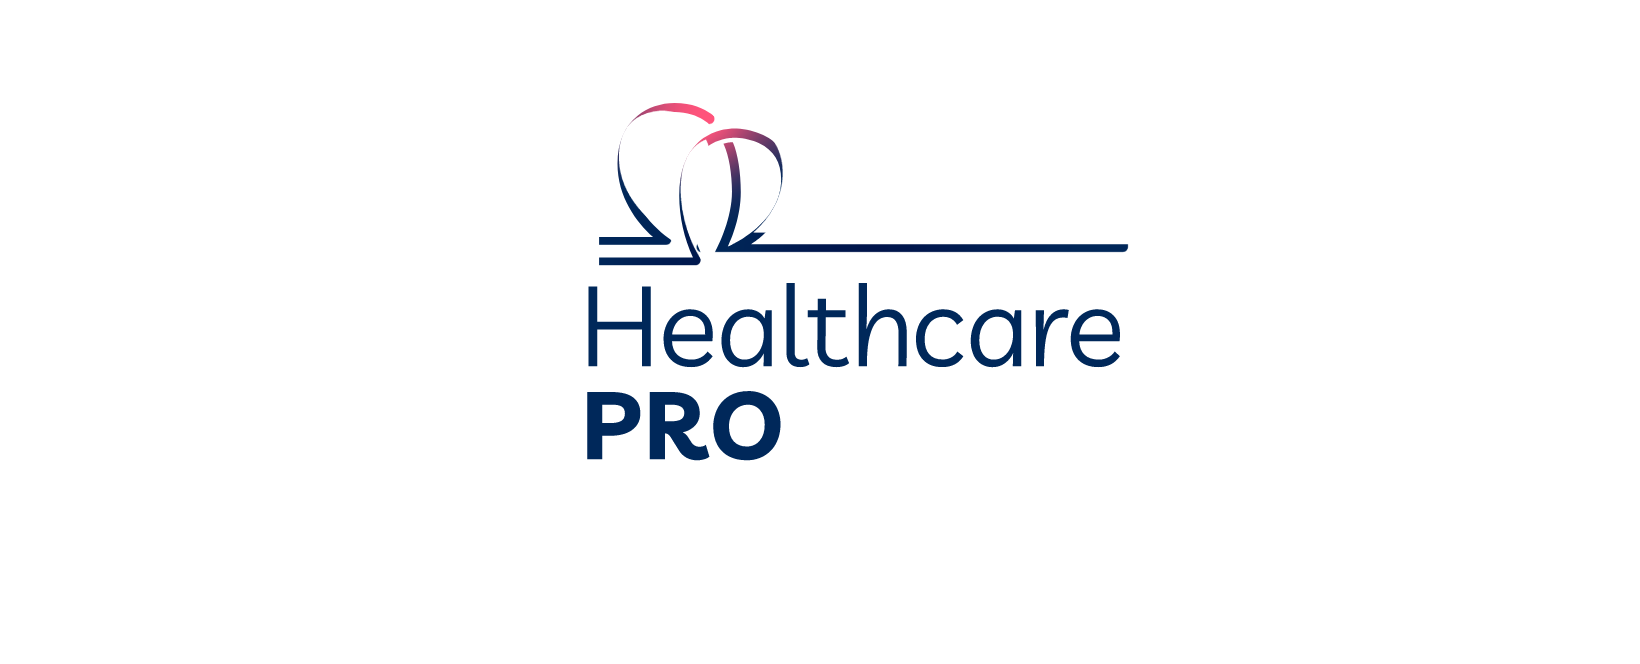 Healthcare Pro UK Discount Code 2022